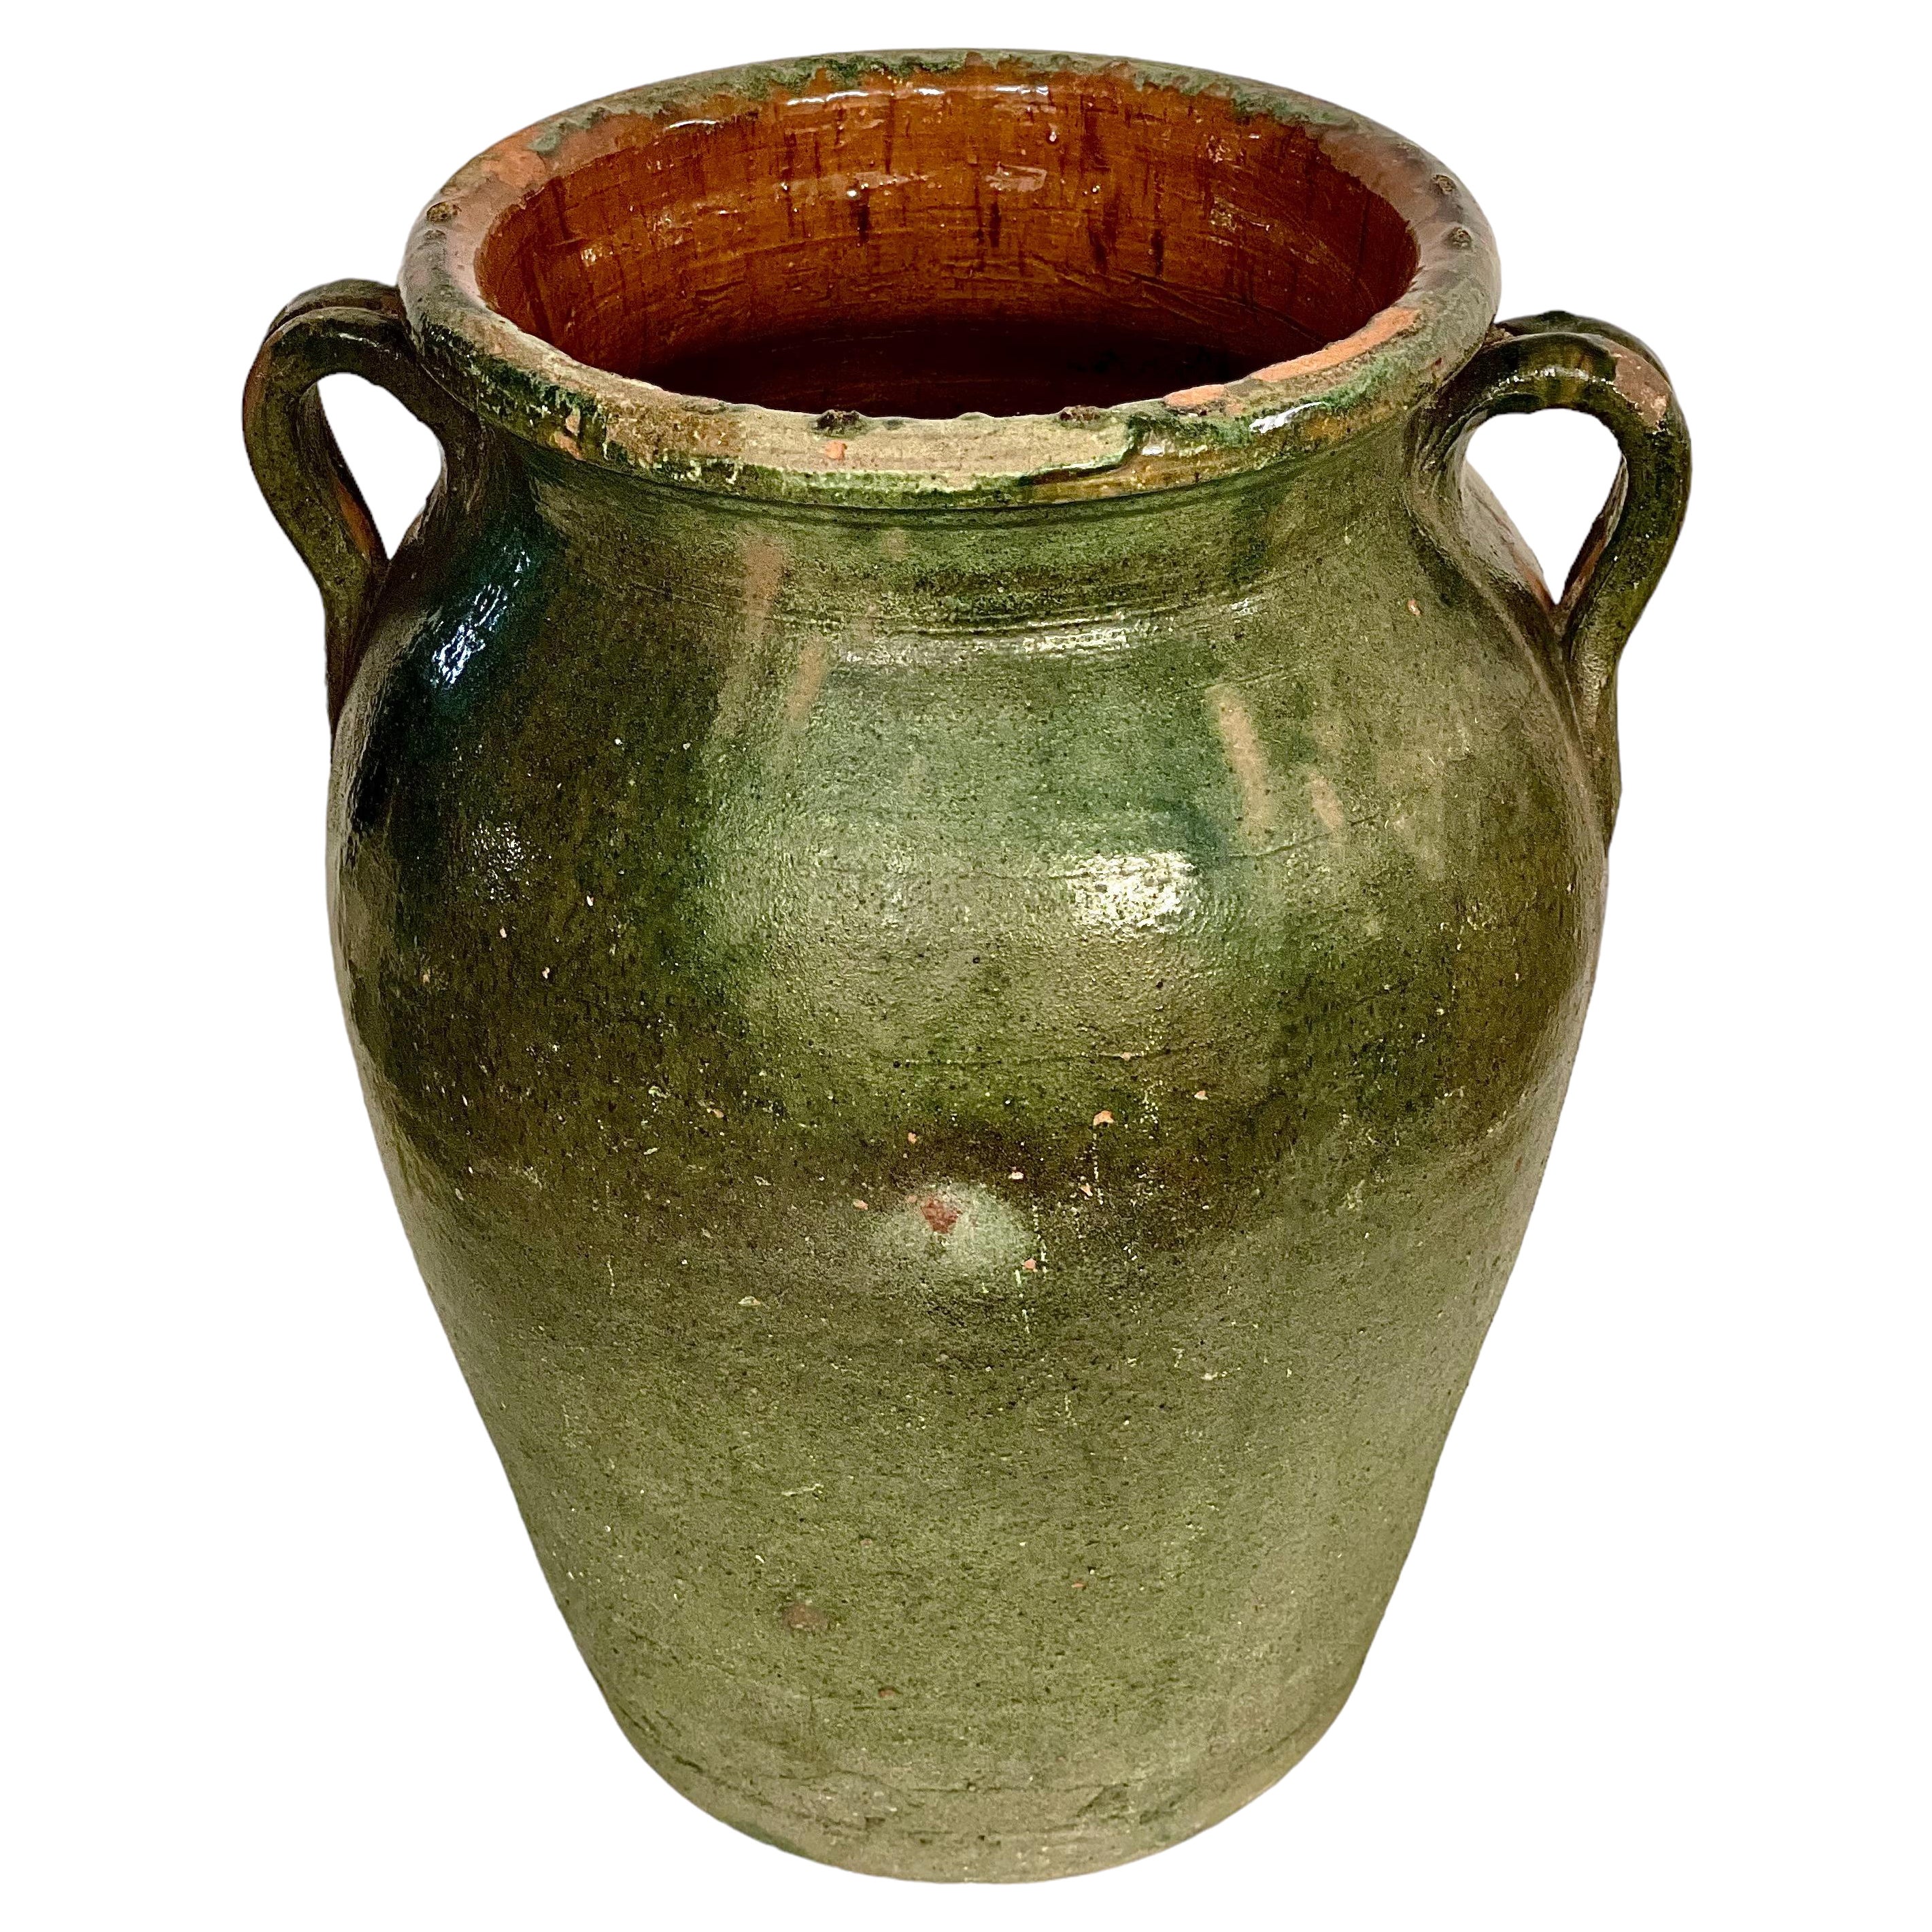 Grand pot à confiture en terre cuite verte, France, 19ème siècle